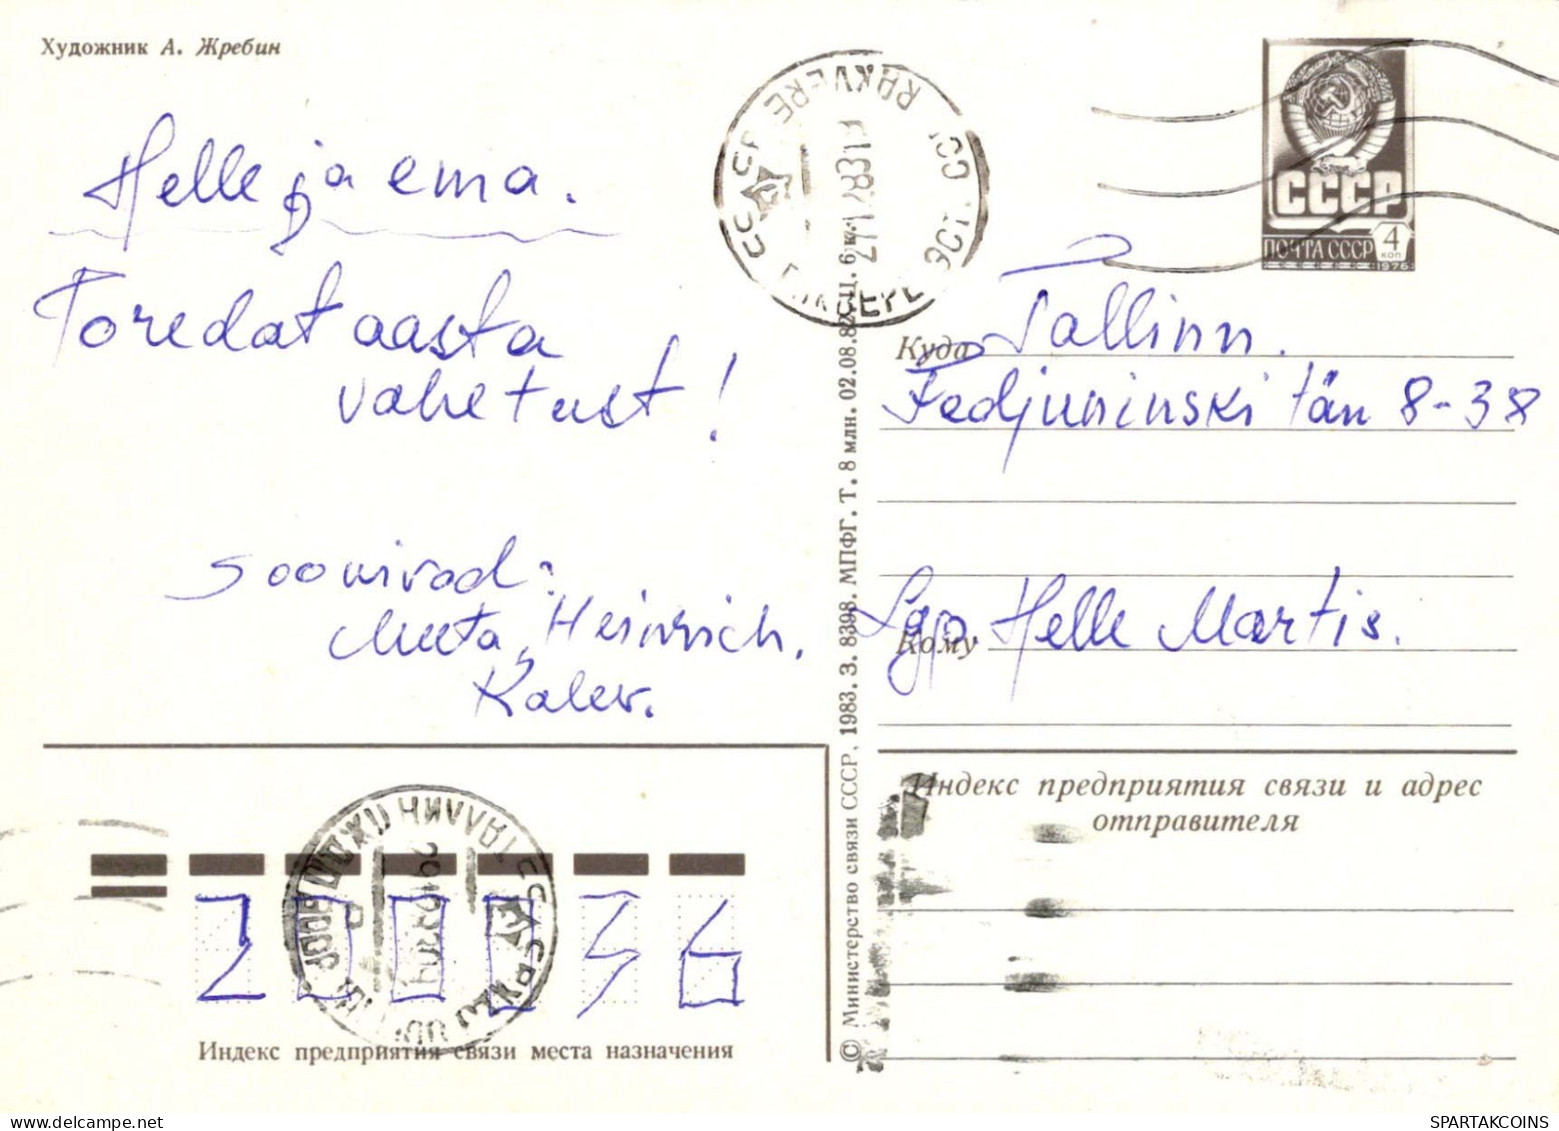 PAPÁ NOEL Feliz Año Navidad Vintage Tarjeta Postal CPSM #PBL115.ES - Santa Claus